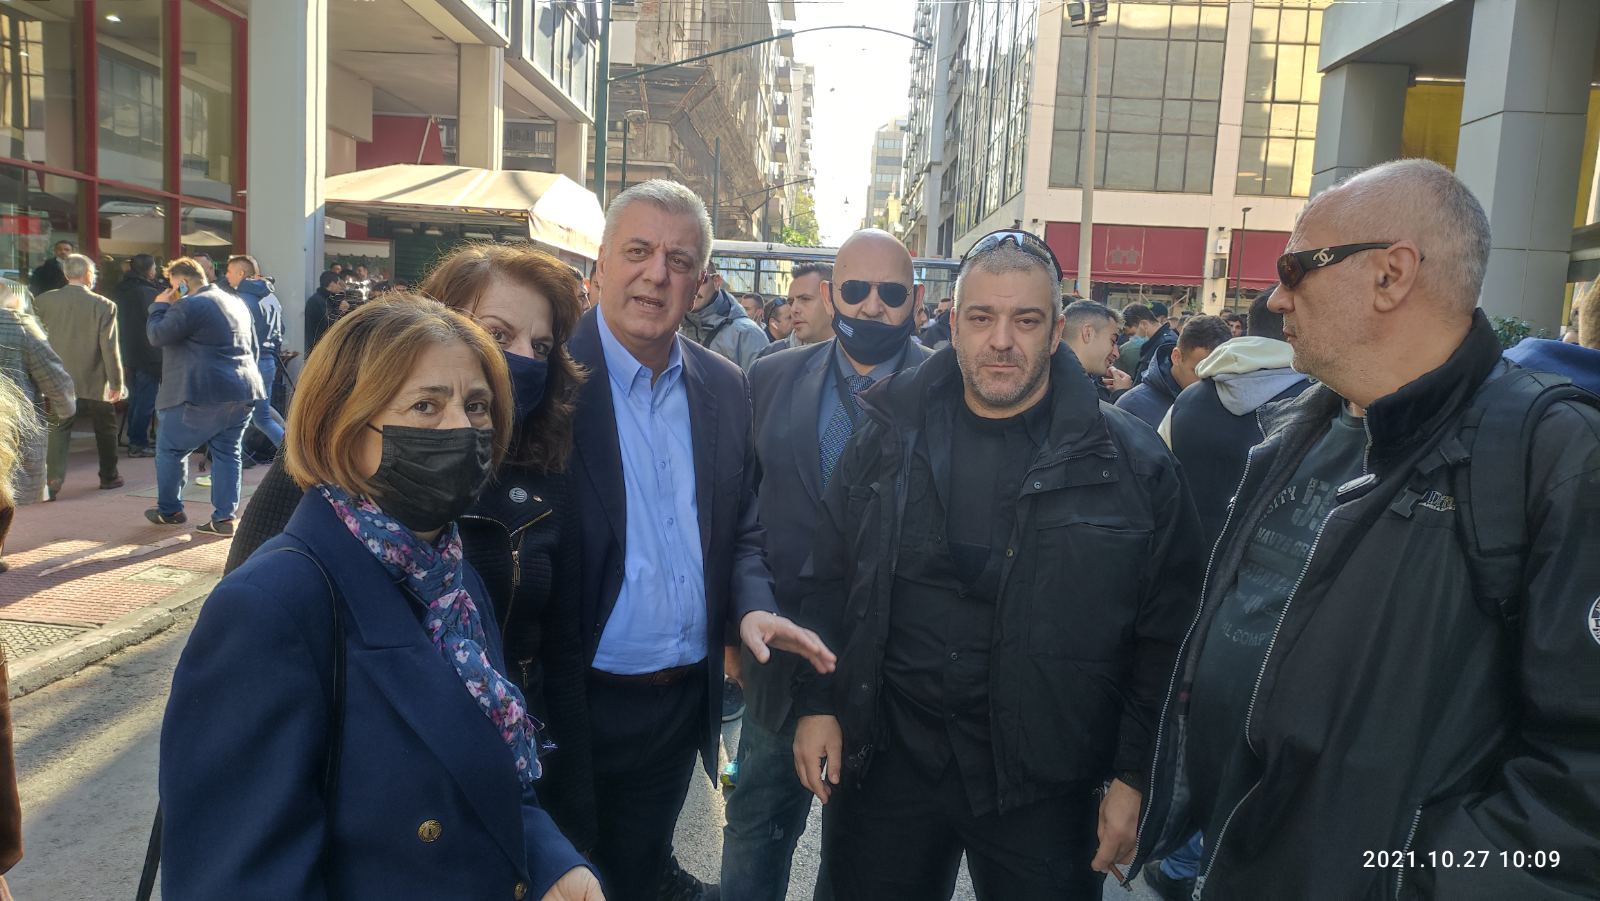 Στο πλευρό των επτά αστυνομικών ο βουλευτής της Ελληνικής Λύσης Αντώνης Μυλωνάκης